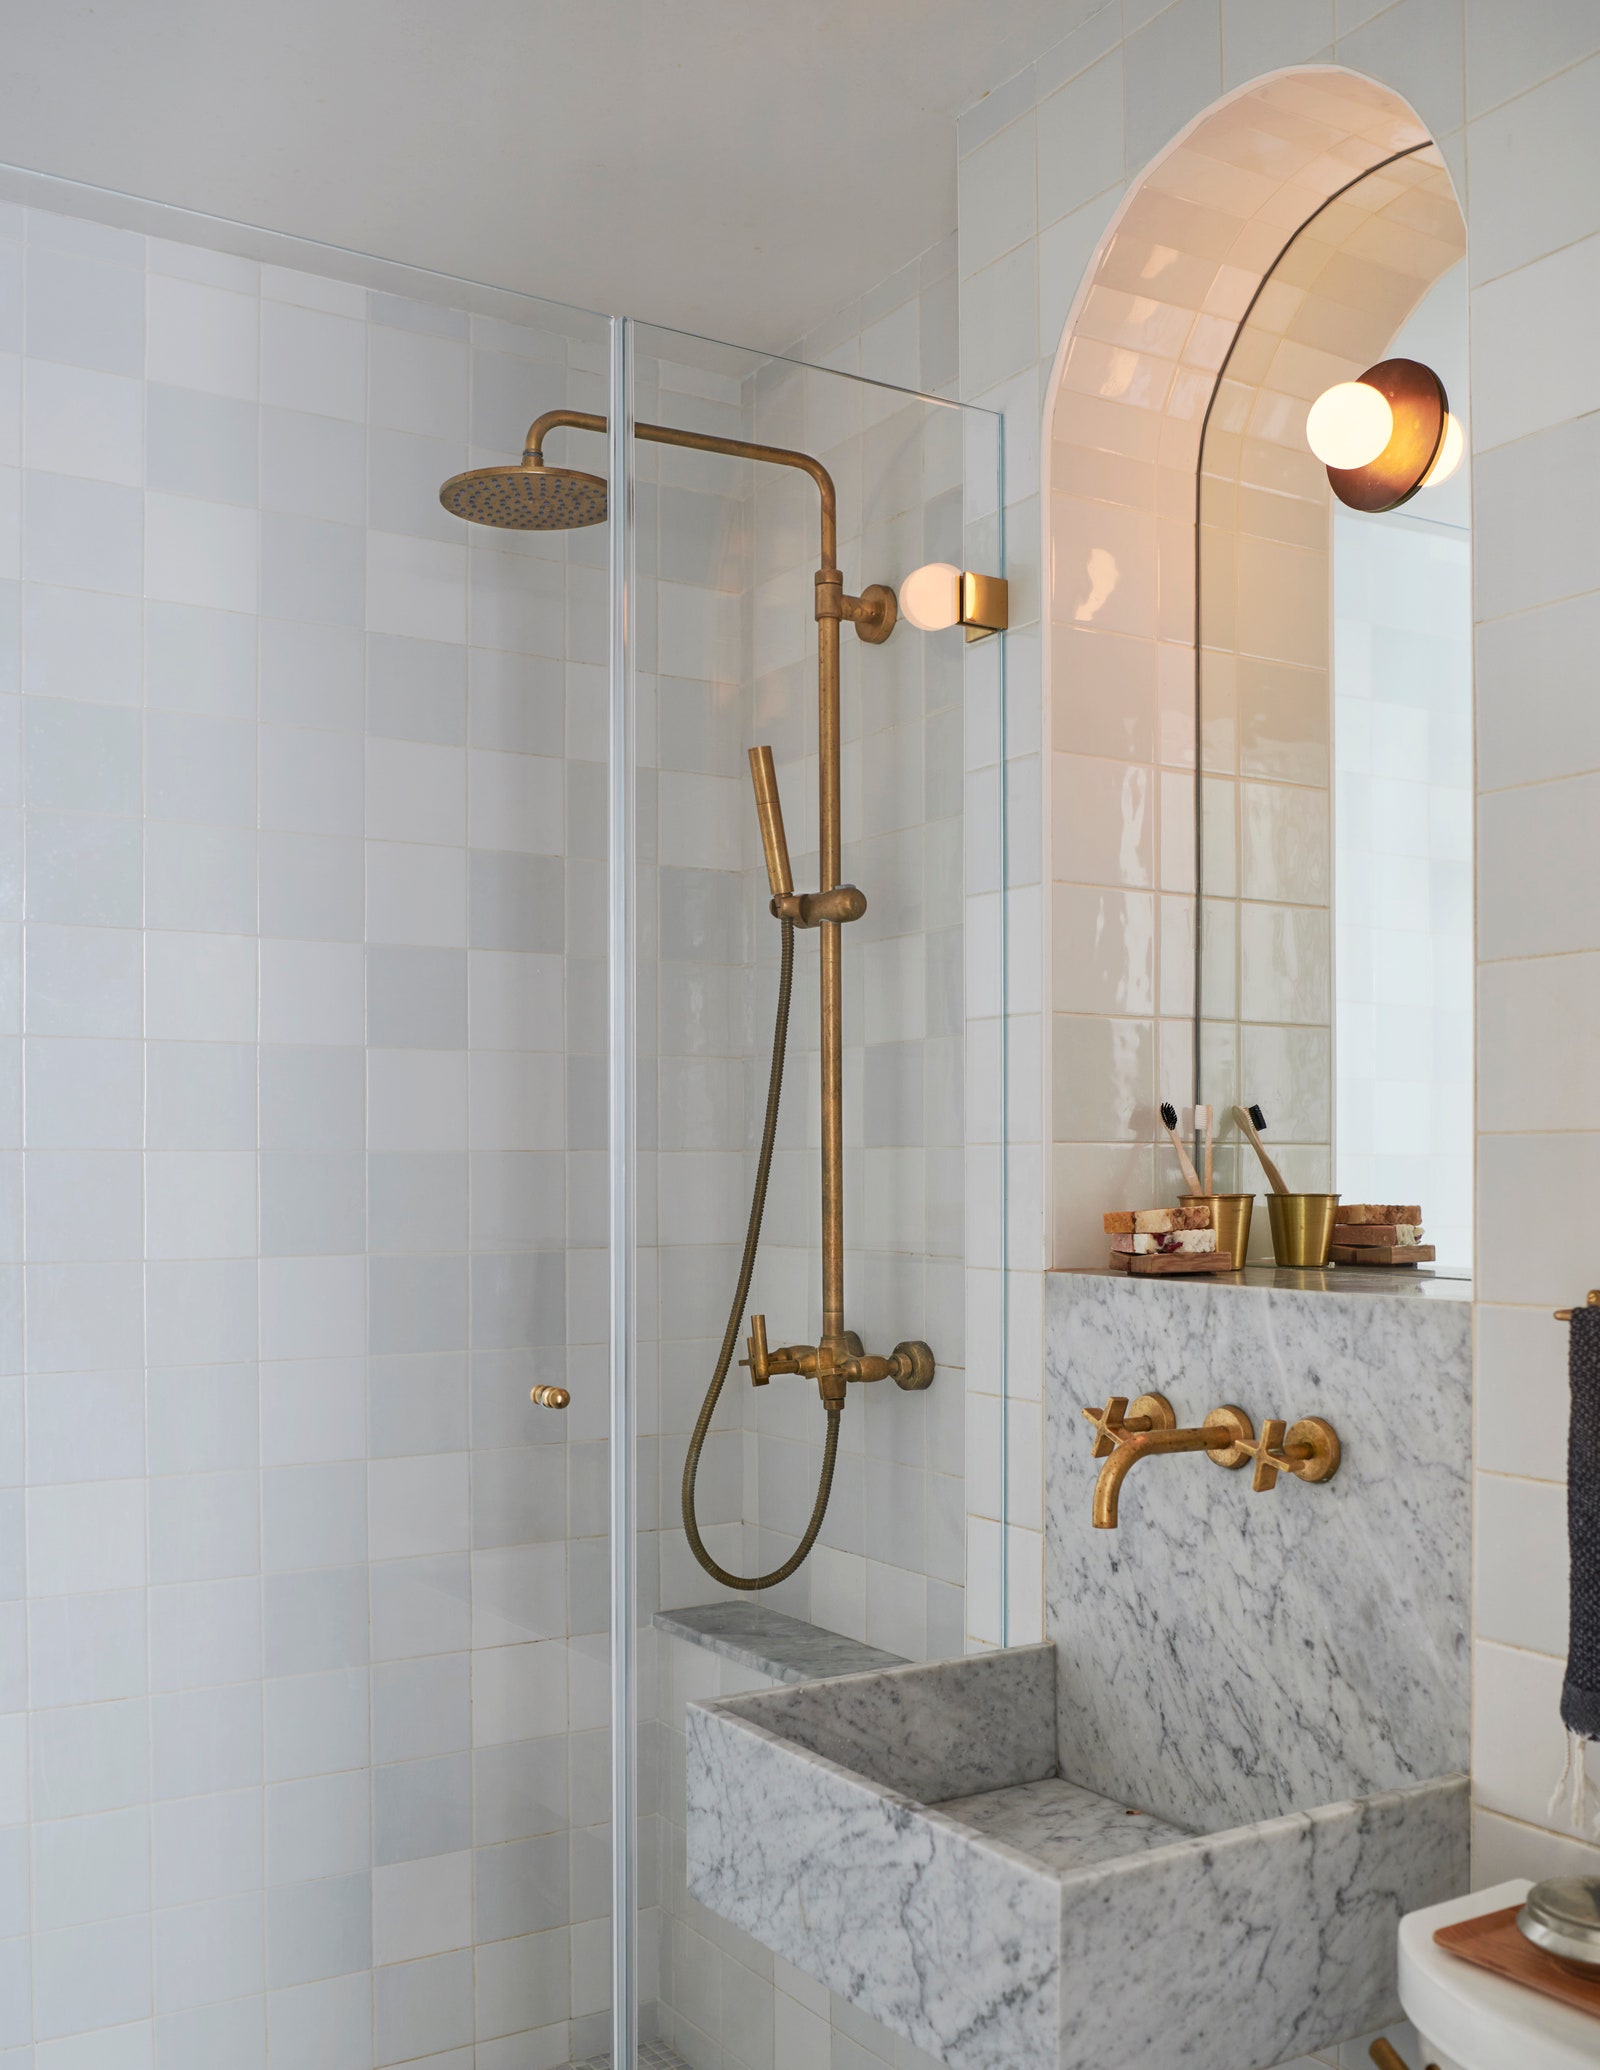 APRÈS La salle de bain est une oasis de marguerite avec une douche à l'italienne, un lavabo en marbre sur mesure, des carreaux de Delft blancs et un. . .